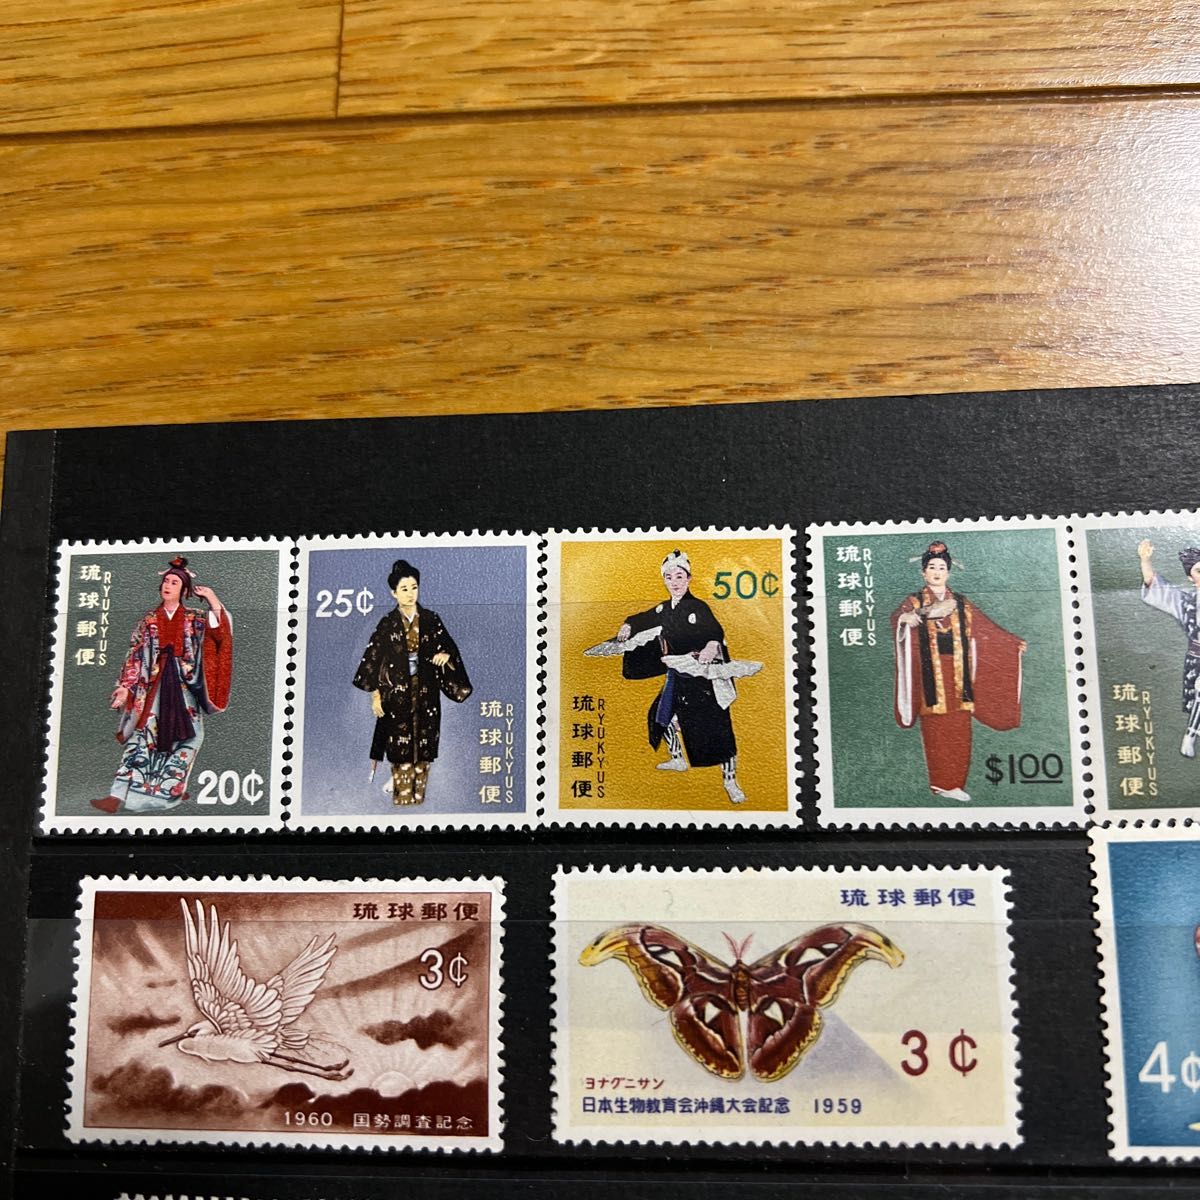 使用済み切手 日本 台紙なし 特殊切手100種 F-99 - コレクション